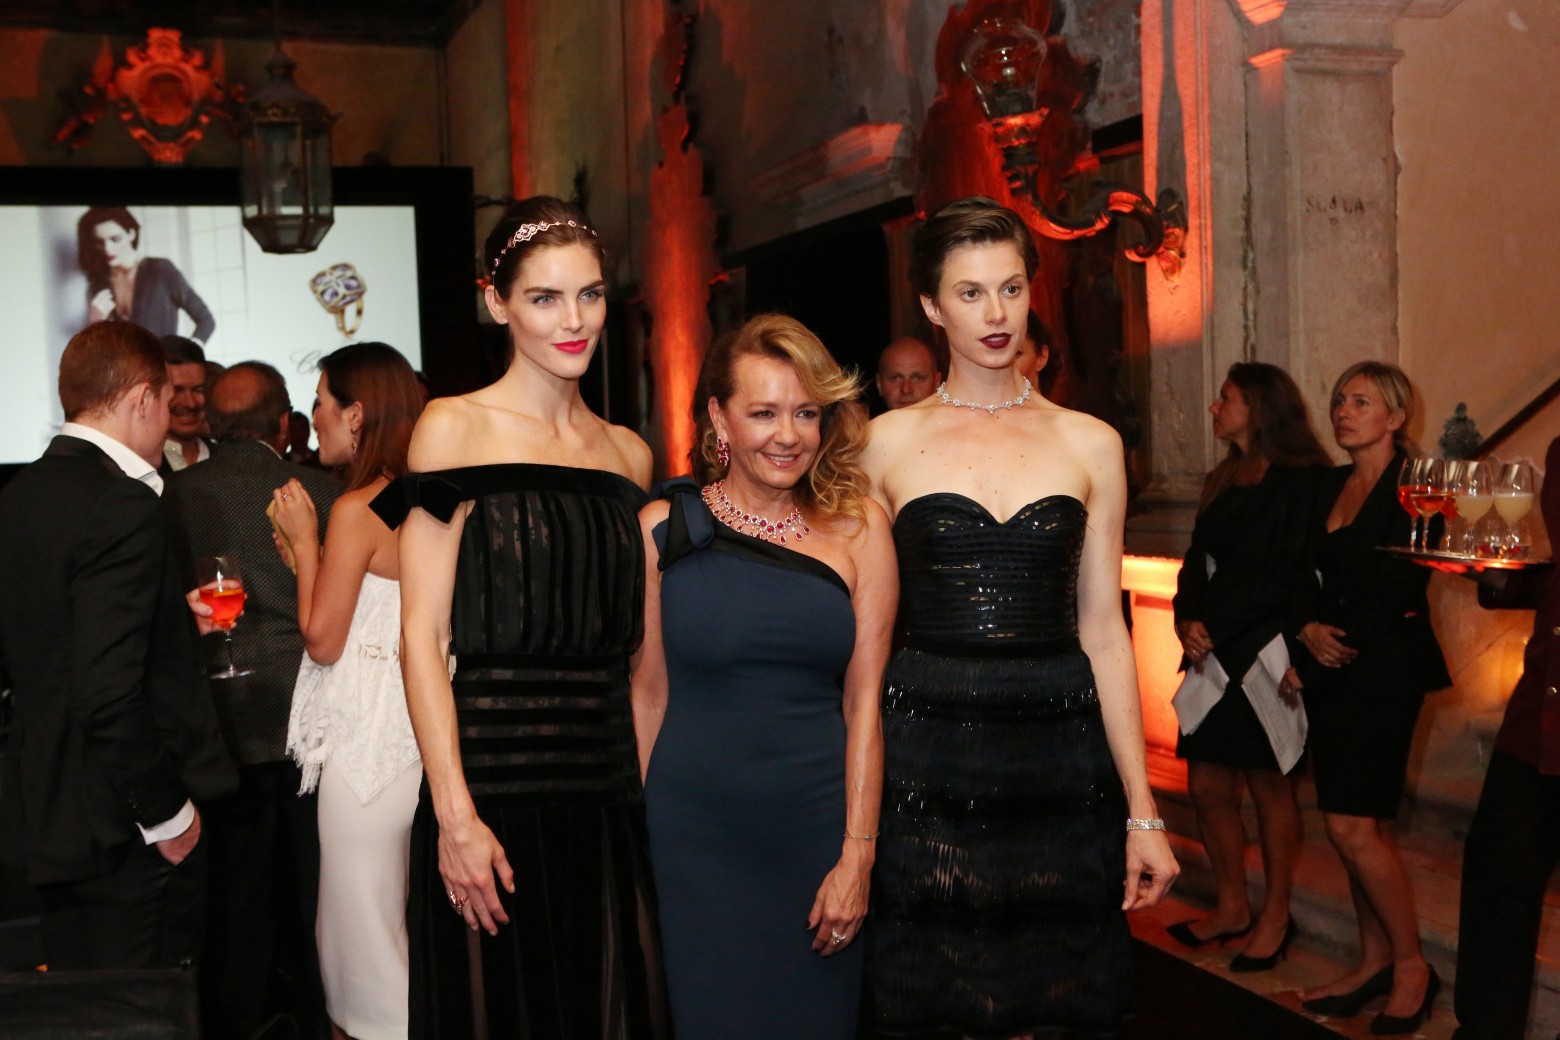 Hilary Rhoda, Caroline Scheufele, Elettra Wiedemann all wearing Chopard jewellery